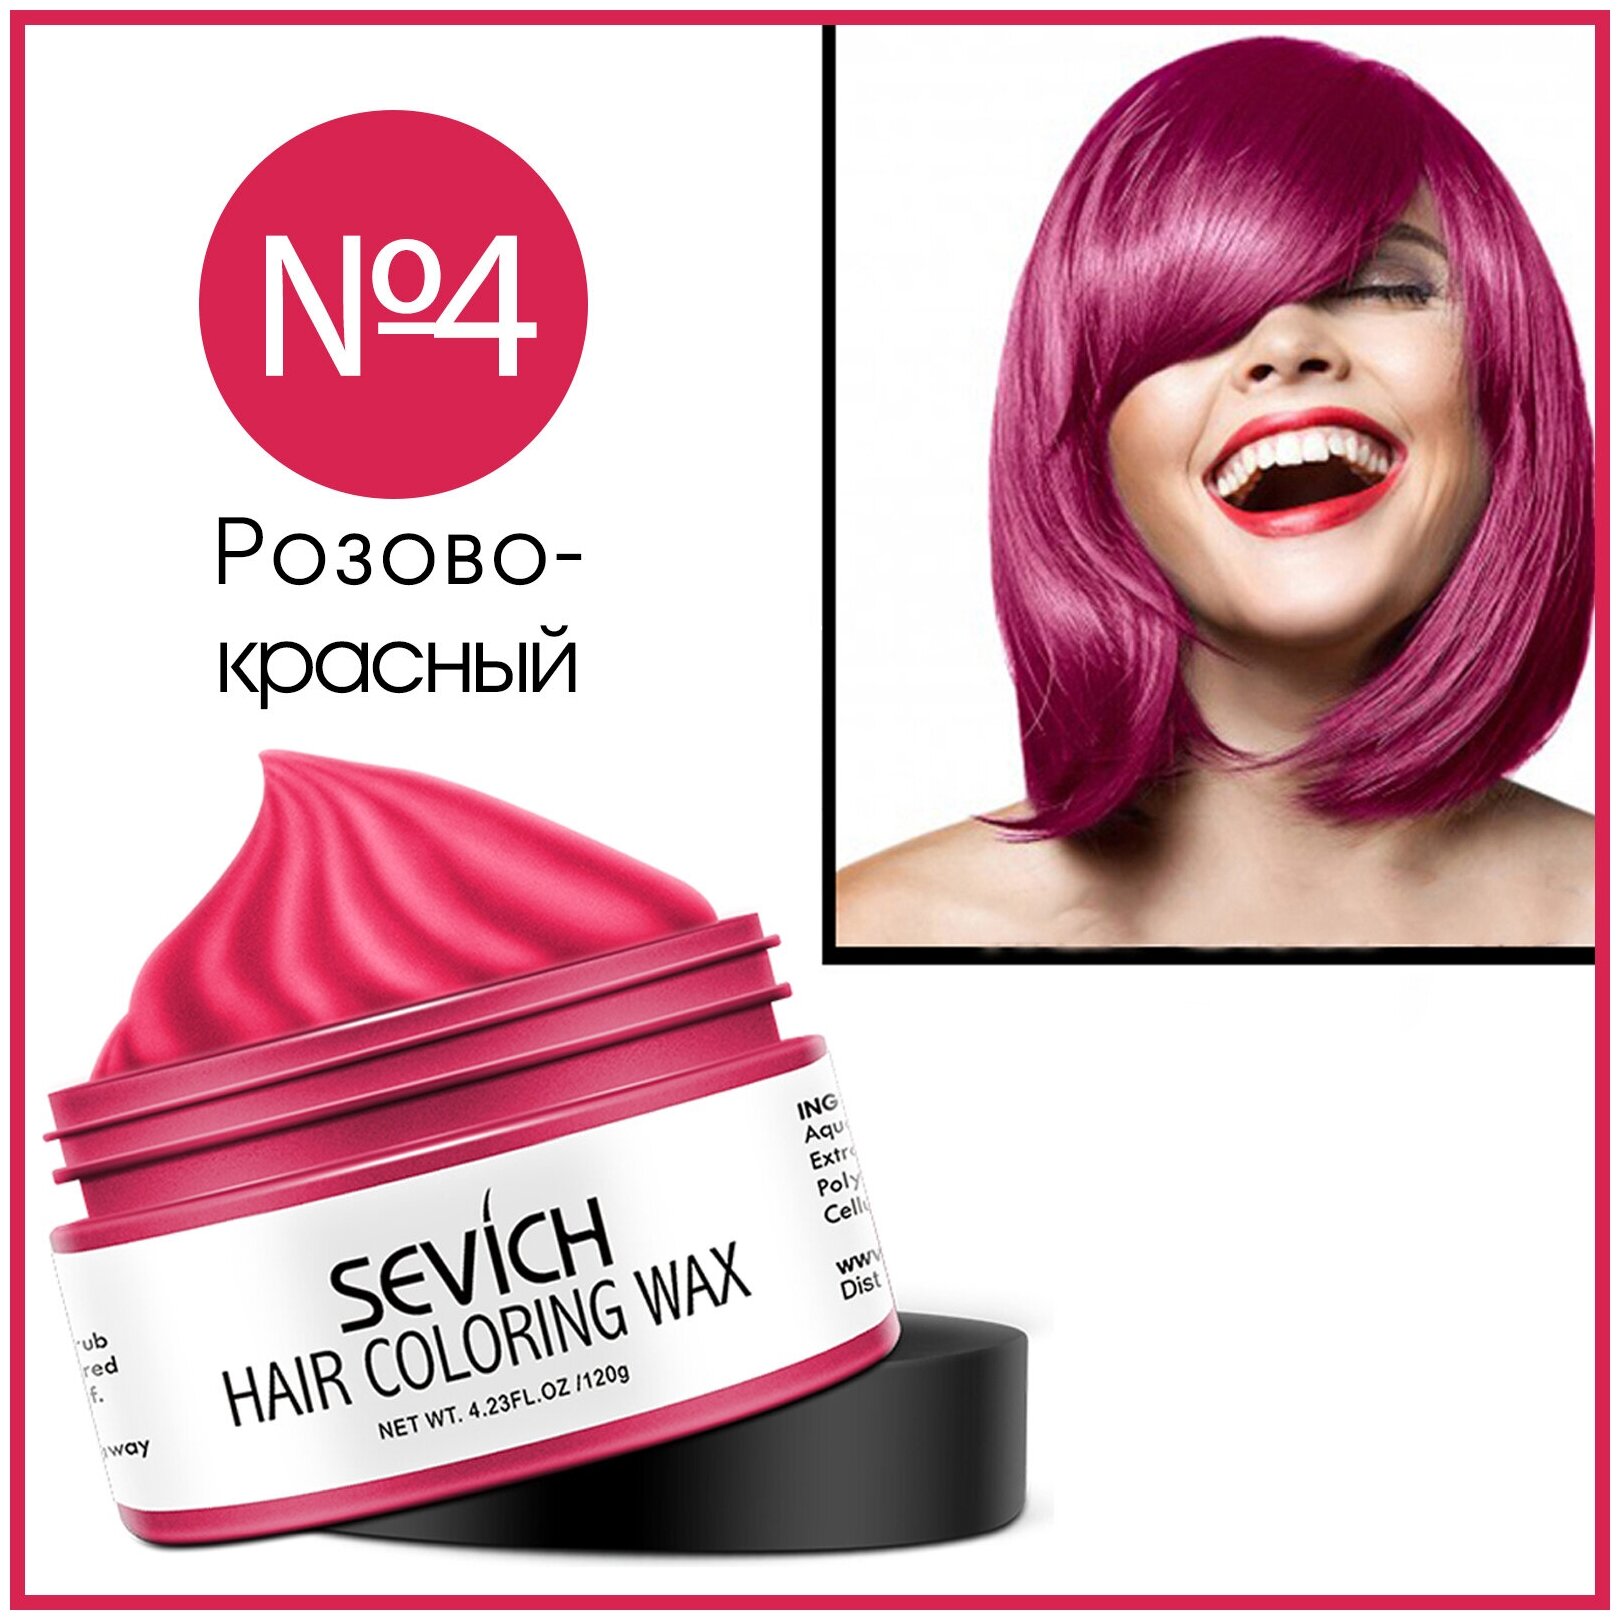 Sevich / Цветной воск/ Однодневная крем краска для временного окрашивания волос. Розово-красный.